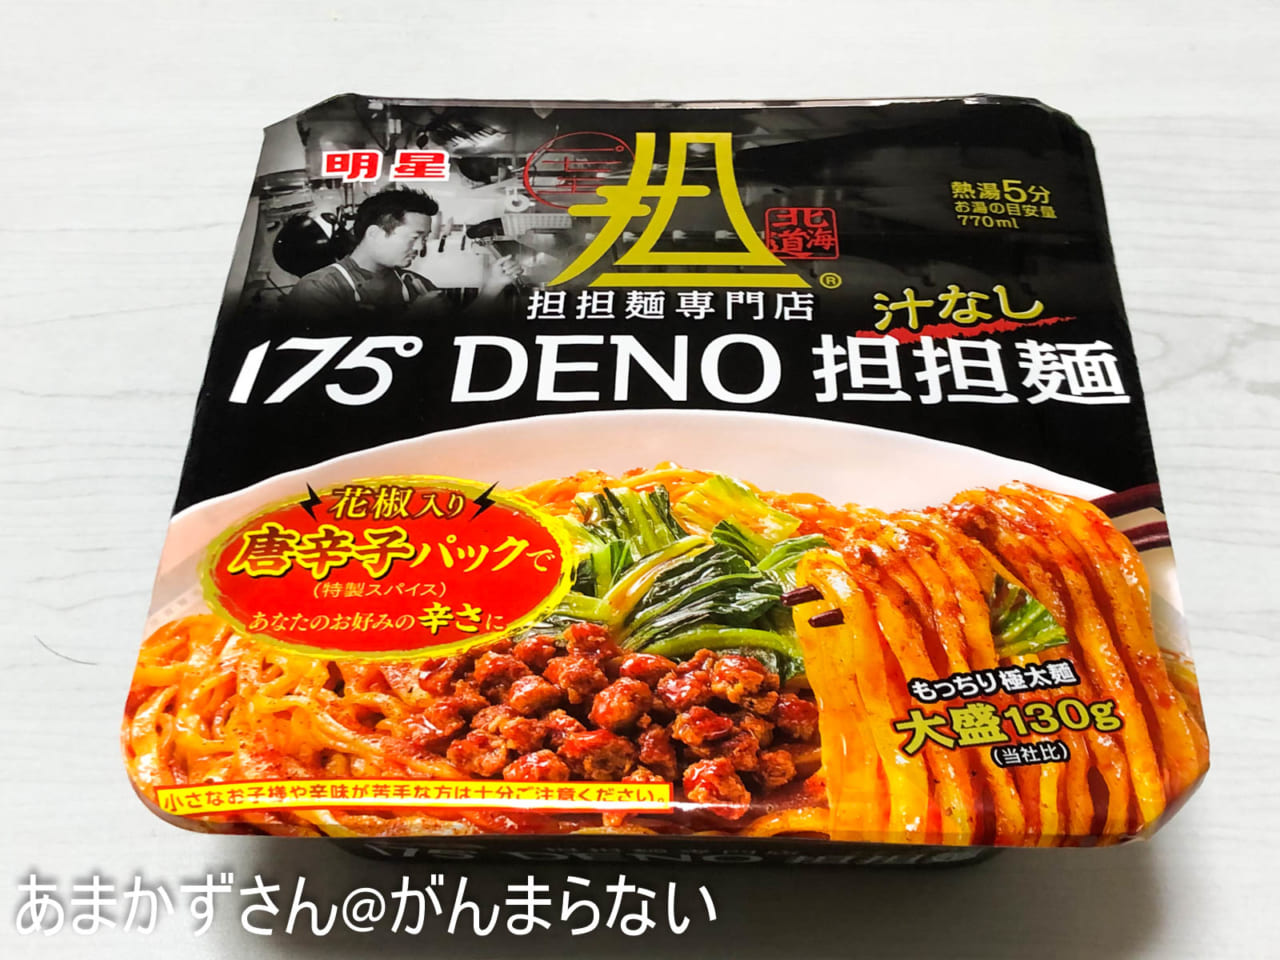 175°DENO汁なし担担麺のパッケージ